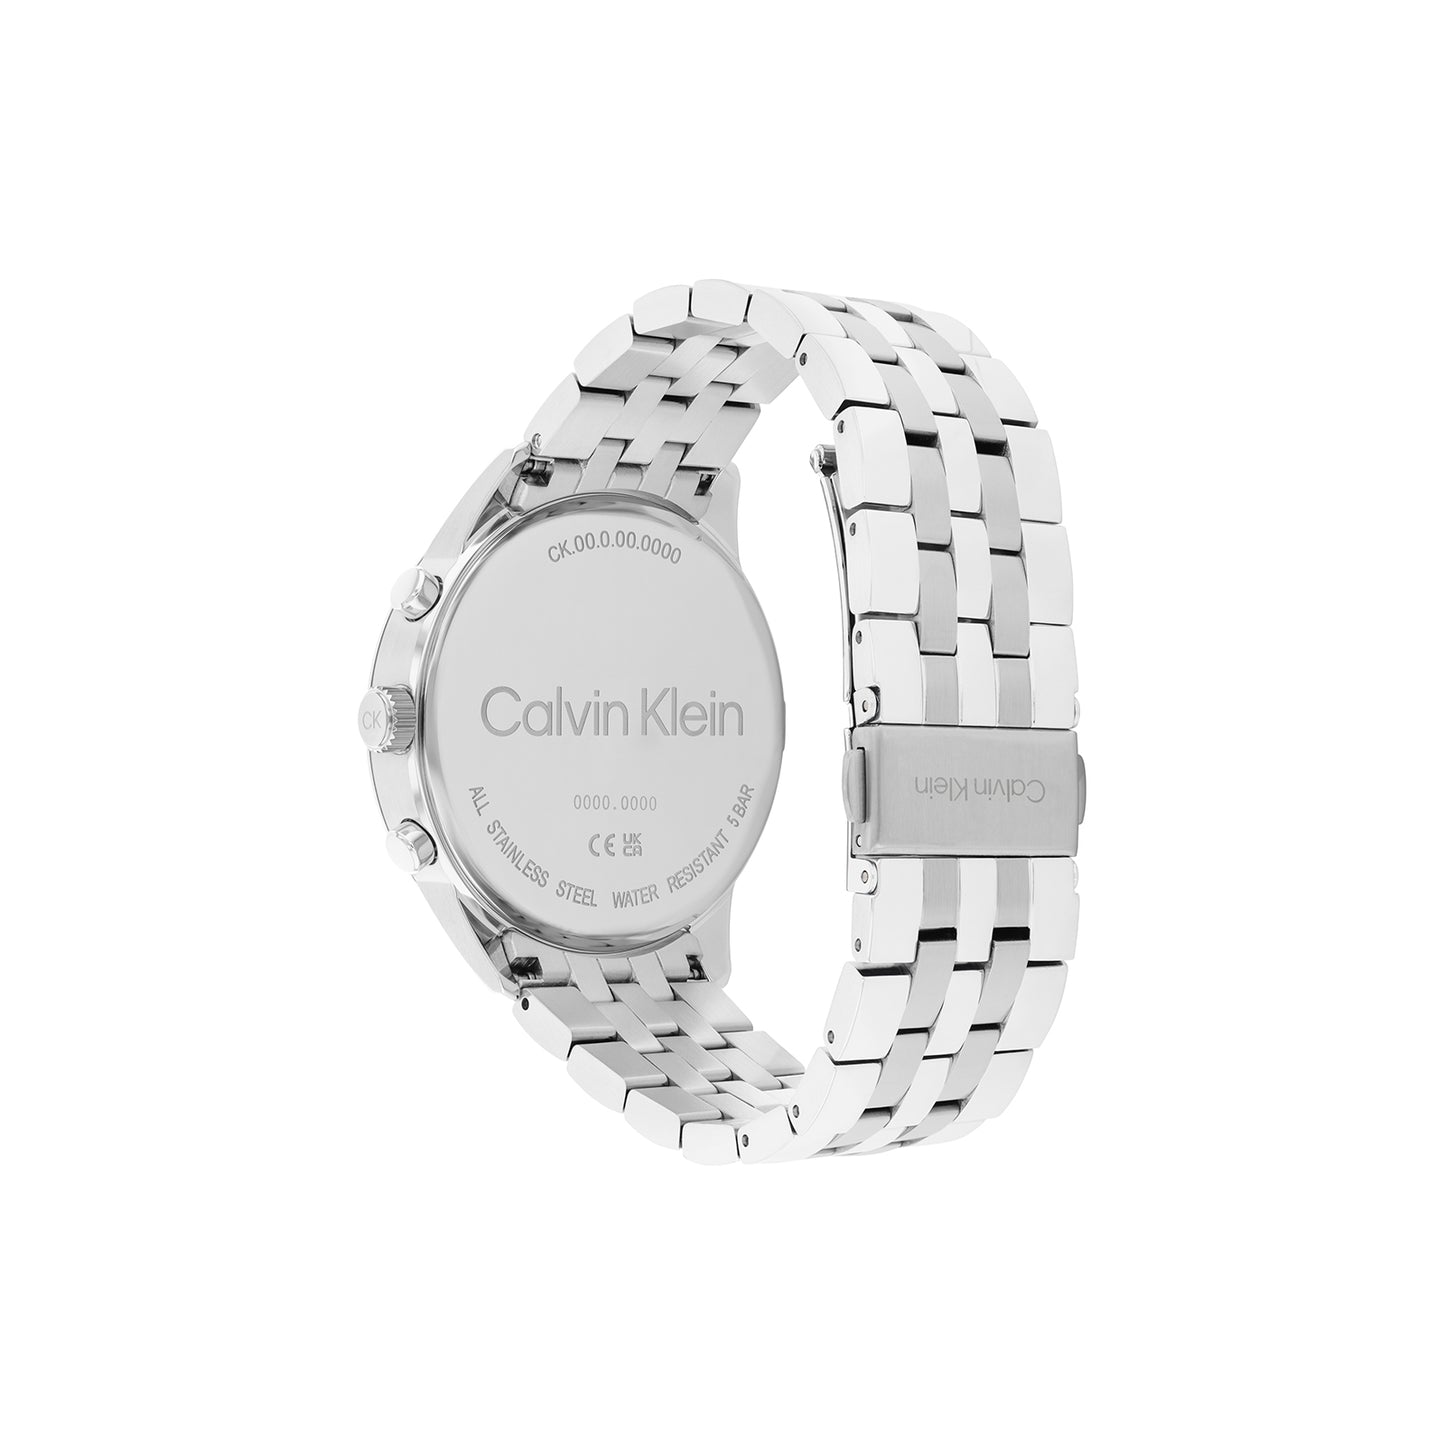 Clavin Klein 25200377 Men's Steel Watch